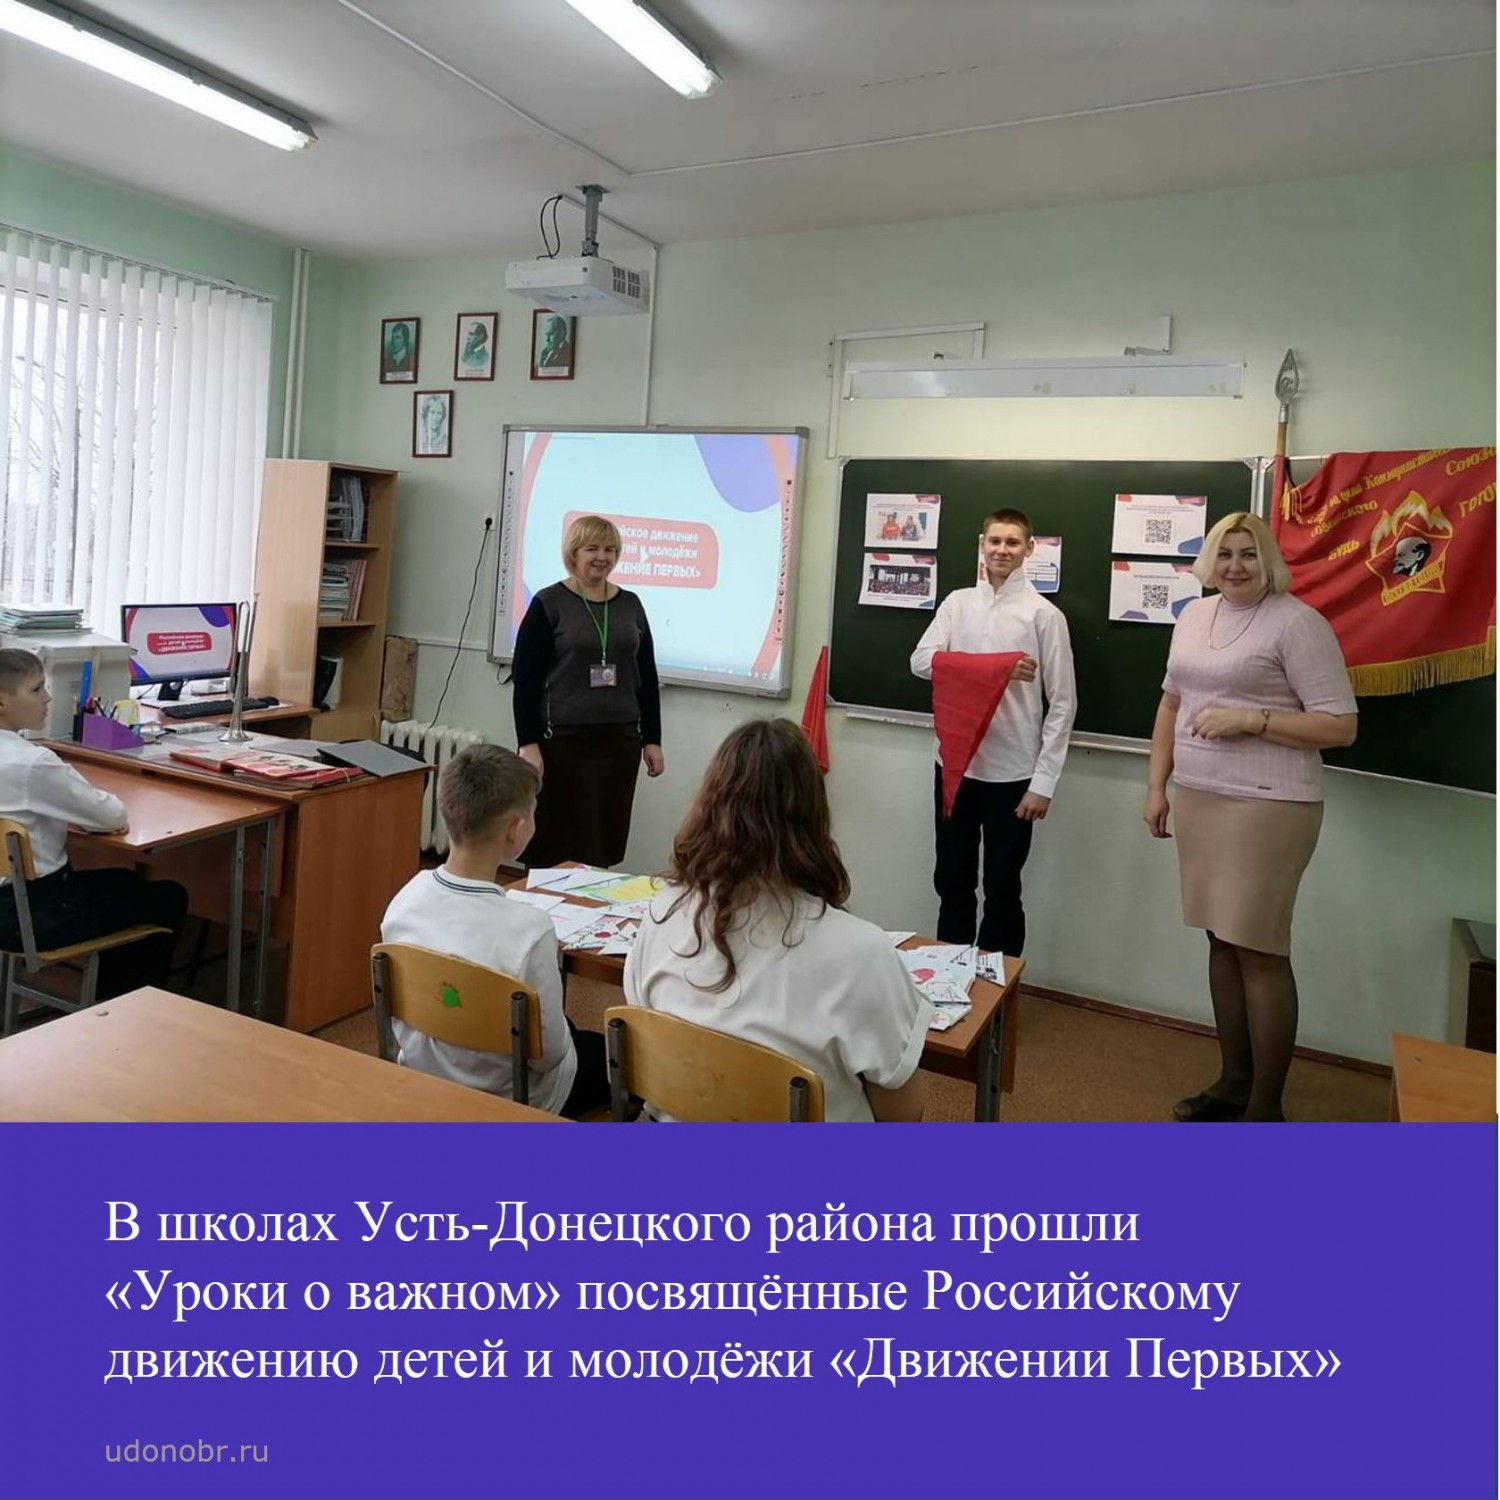 В школах Усть-Донецкого района прошки «Уроки о важном» посвящённые Российскому движению детей и молодёжи 